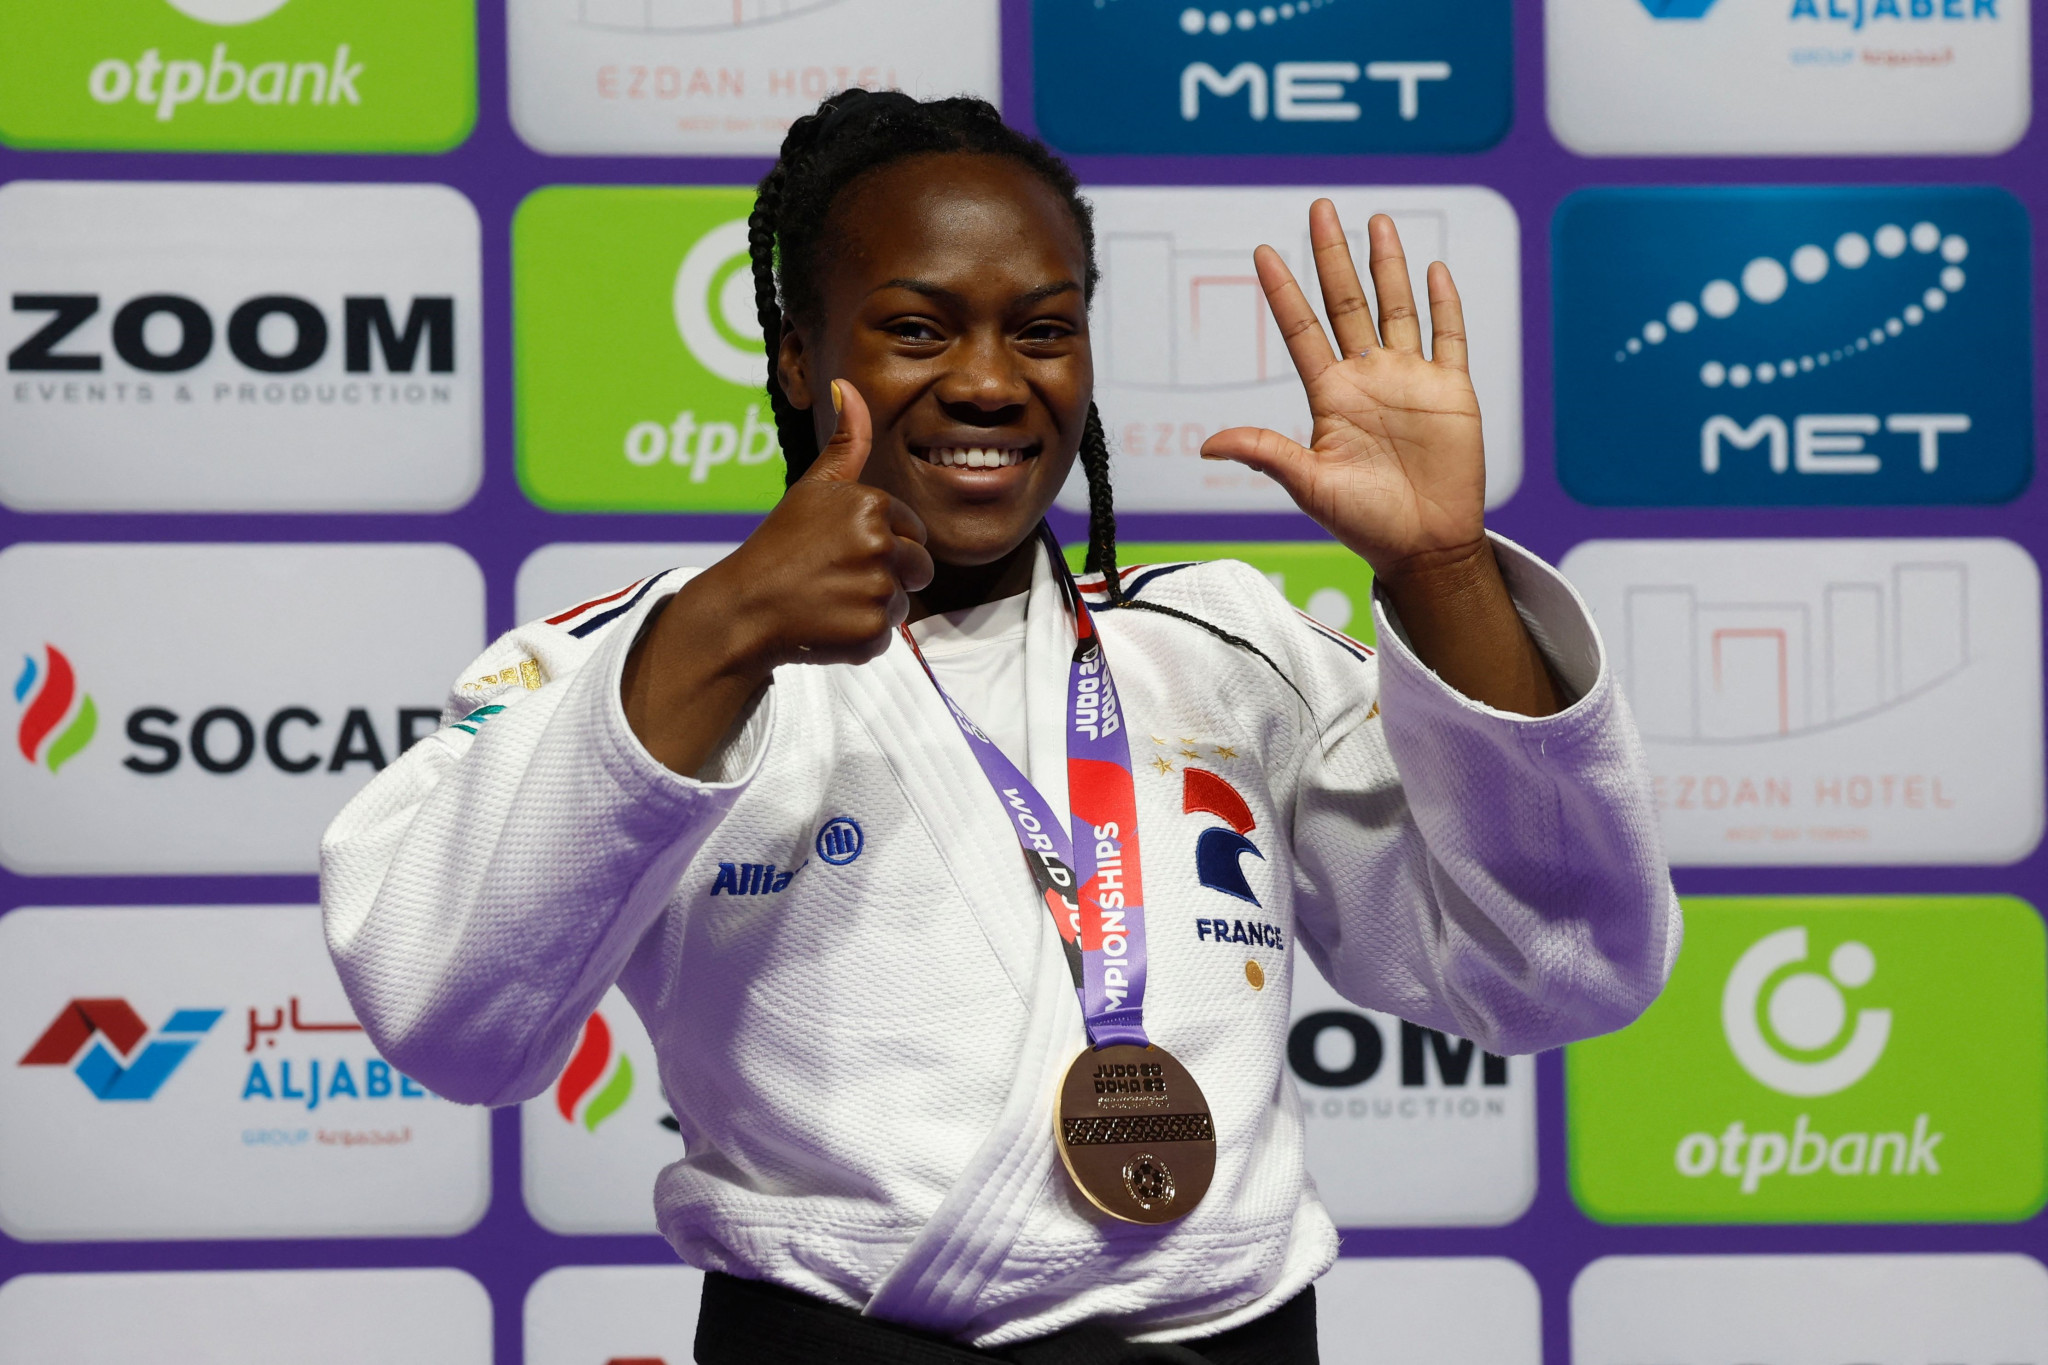 France's Clarisse Agbégnénou has won the women's under-63kg title on six occasions ©Getty Images